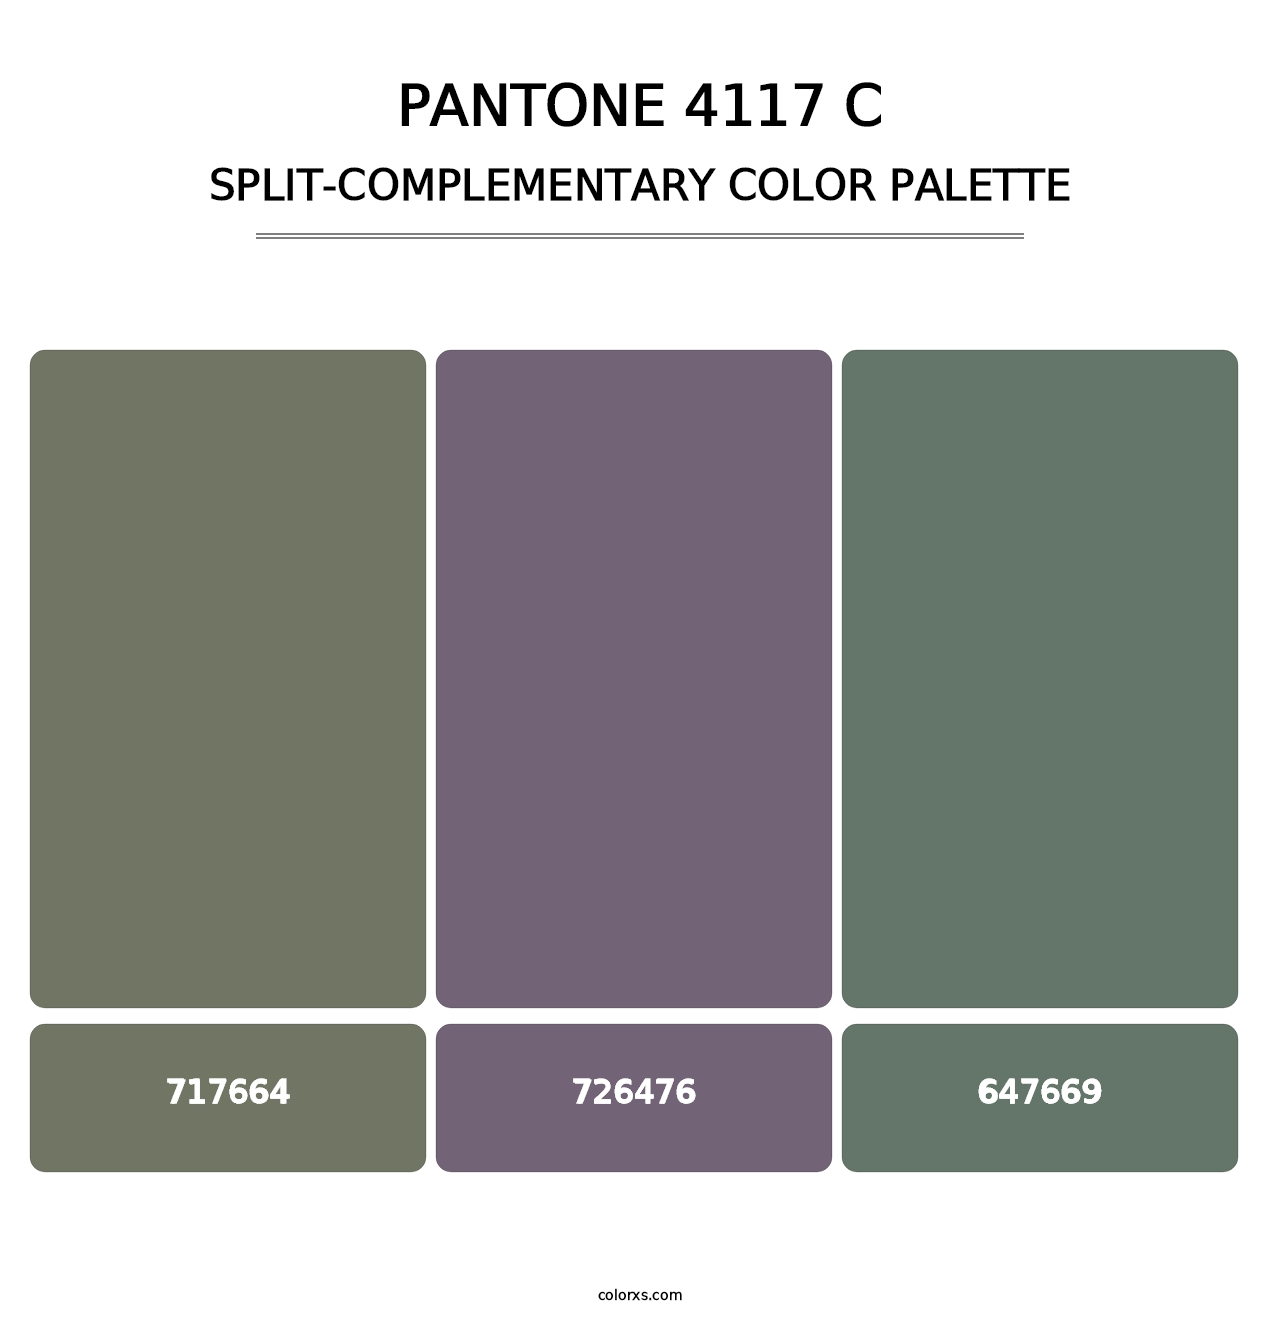 PANTONE 4117 C - Split-Complementary Color Palette